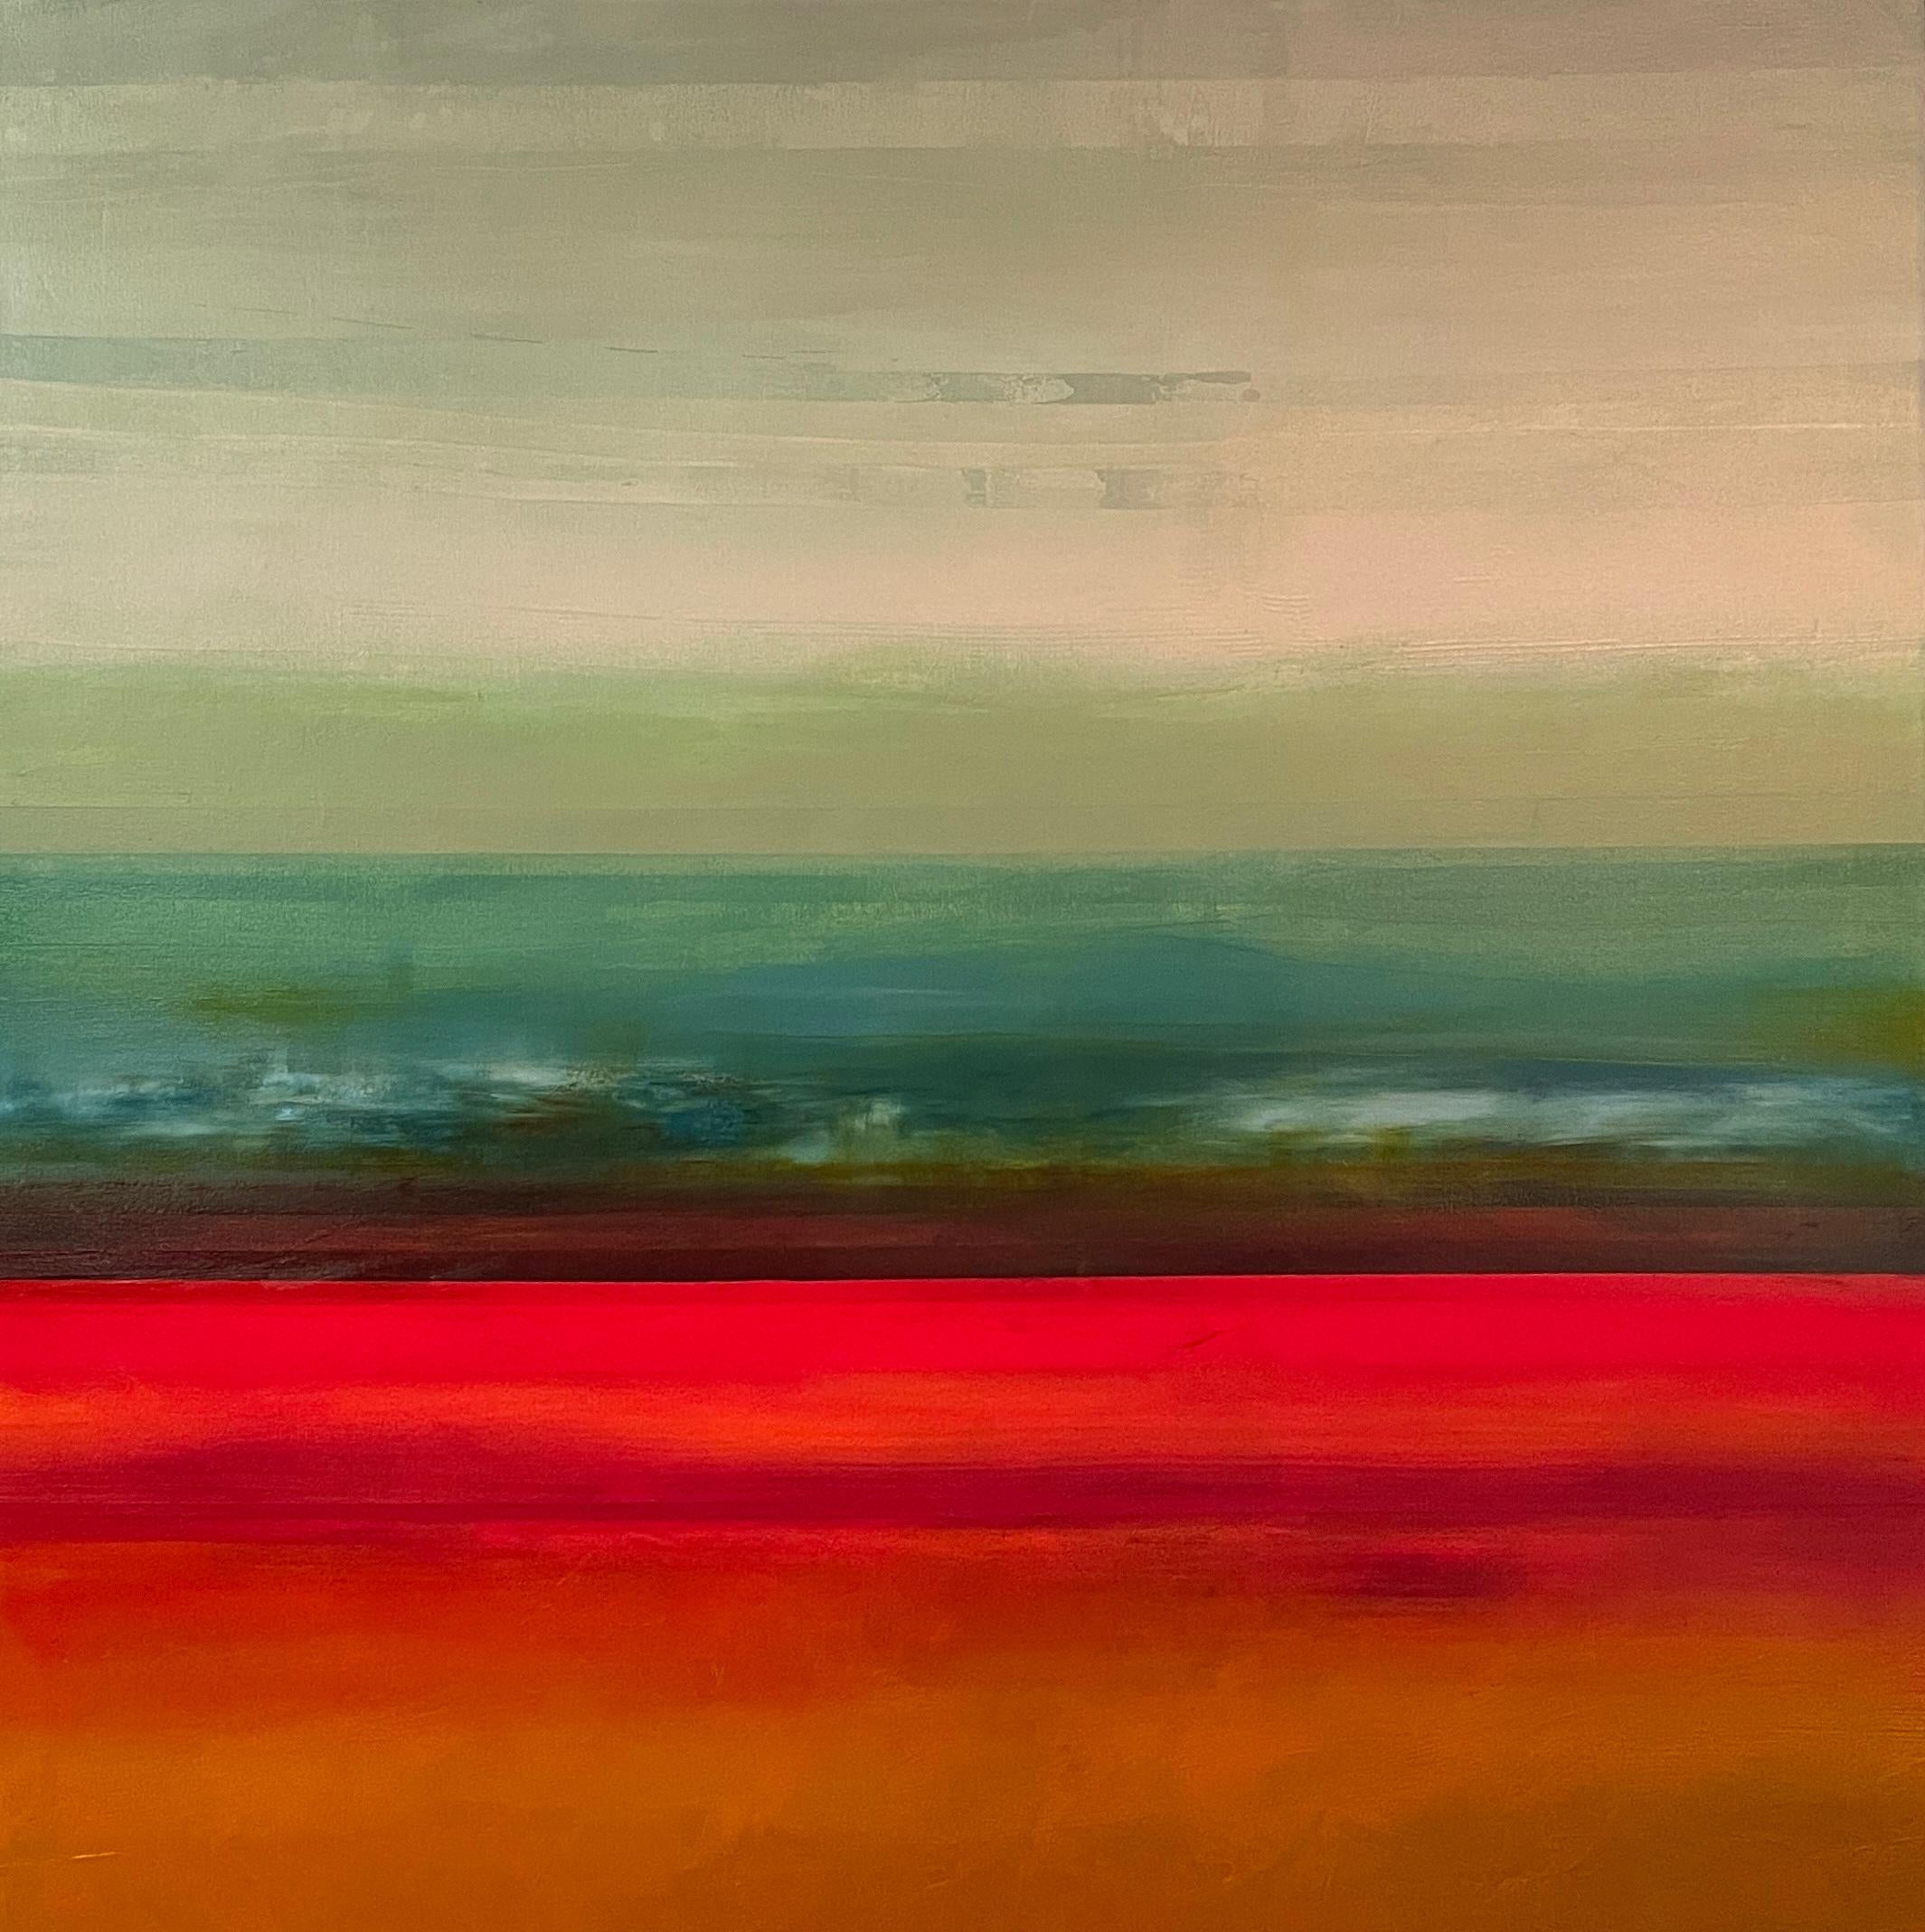 Landscape Painting Katheryn Holt - "Into the Sky" Grand paysage d'expressionnisme abstrait contemporain en techniques mixtes